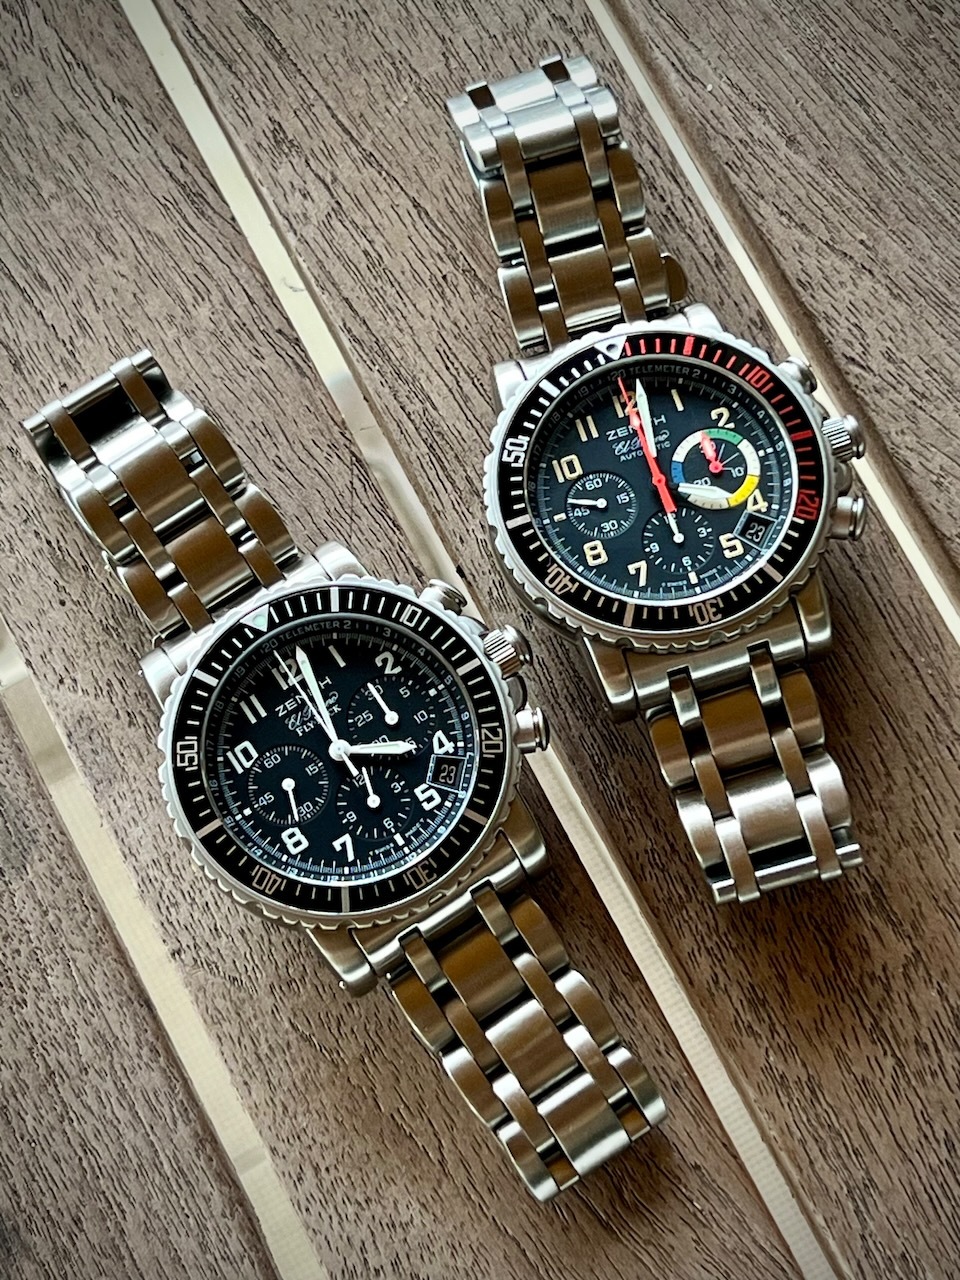 glashutte - Feu de vos montres d'aviateur, ou inspirées du monde aéronautique - Page 39 Eip1